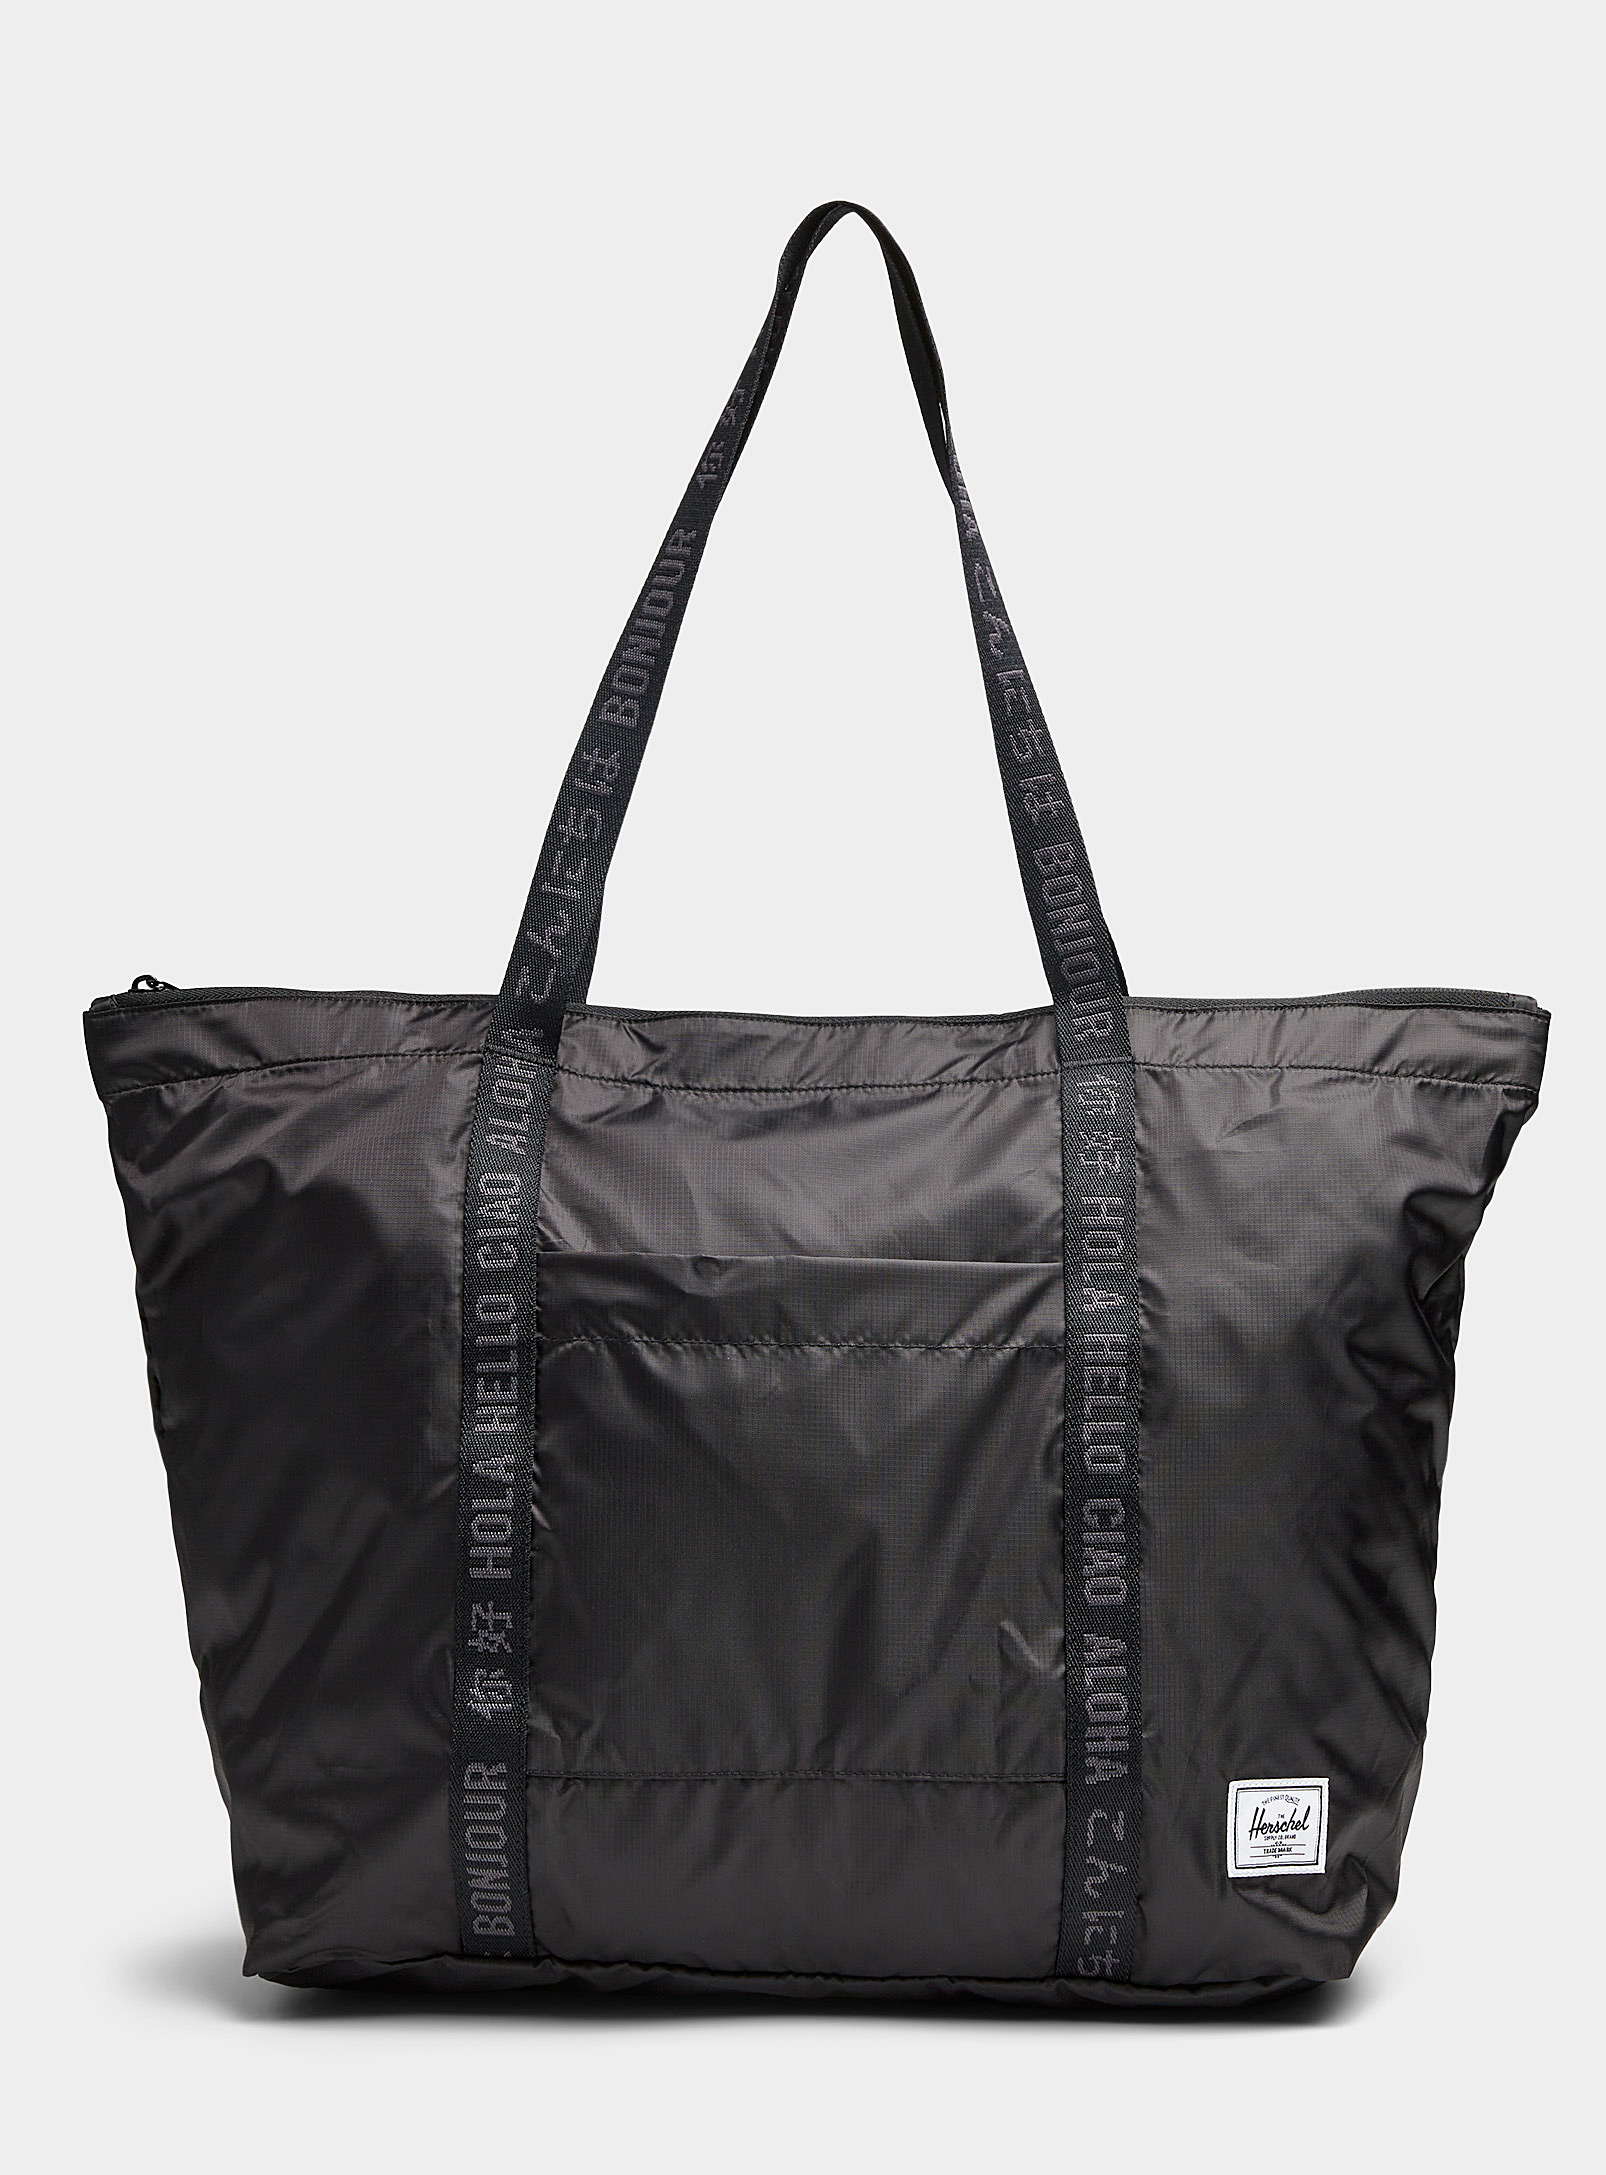 Herschel - Men's Portland packable Tote Bag